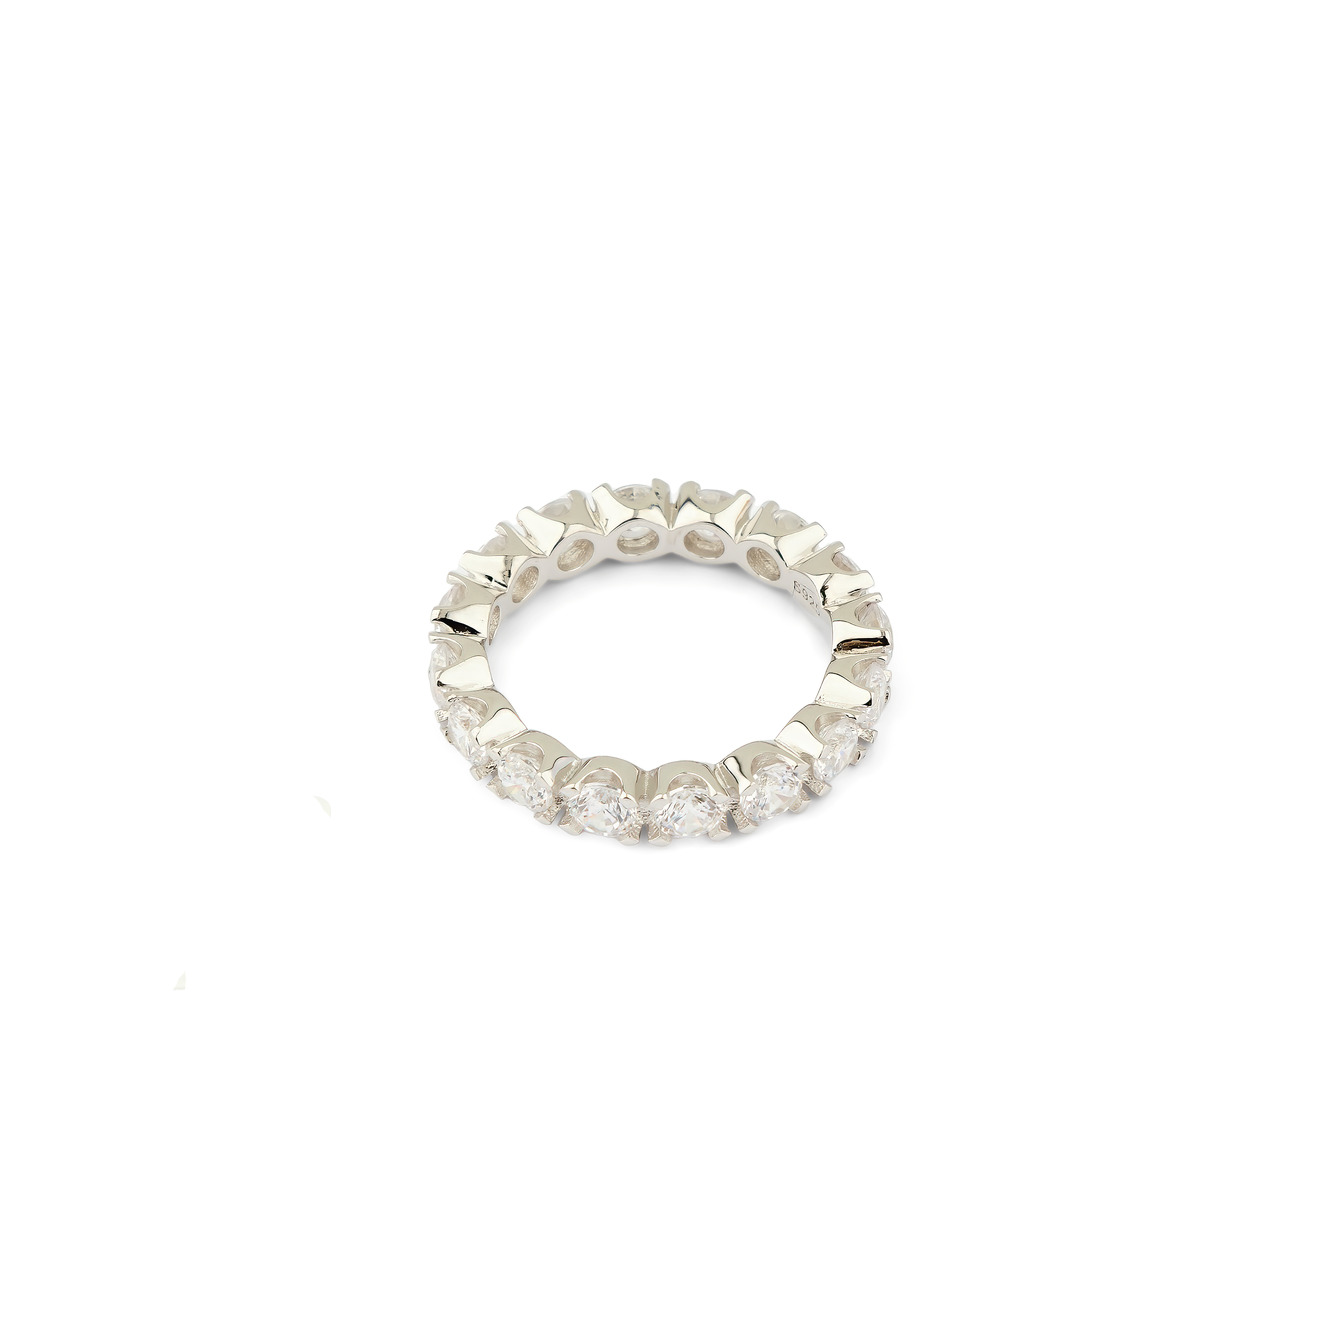 Holy Silver Тонкое кольцо из серебра с дорожкой из белых кристаллов holy silver кольцо дорожка из розовых и белых кристаллов разной формы